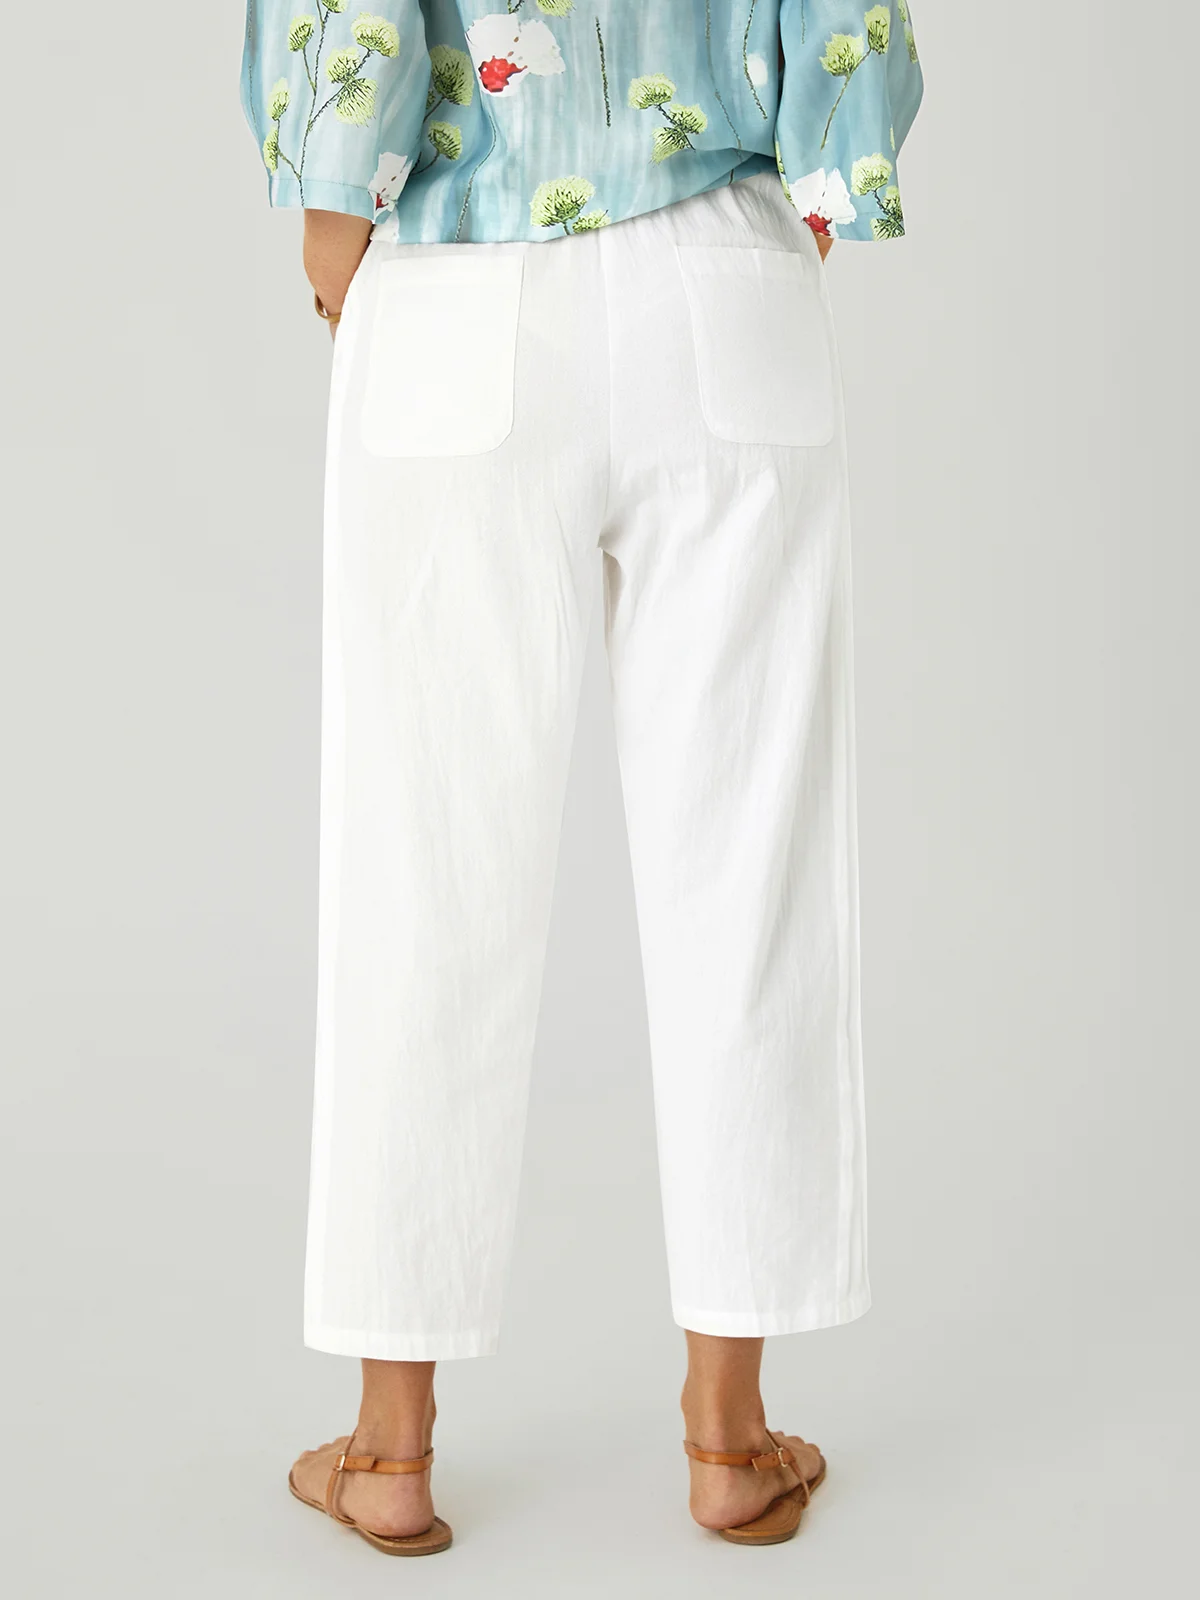 Women's Cotton Linen Lace Pocket Casual Pants